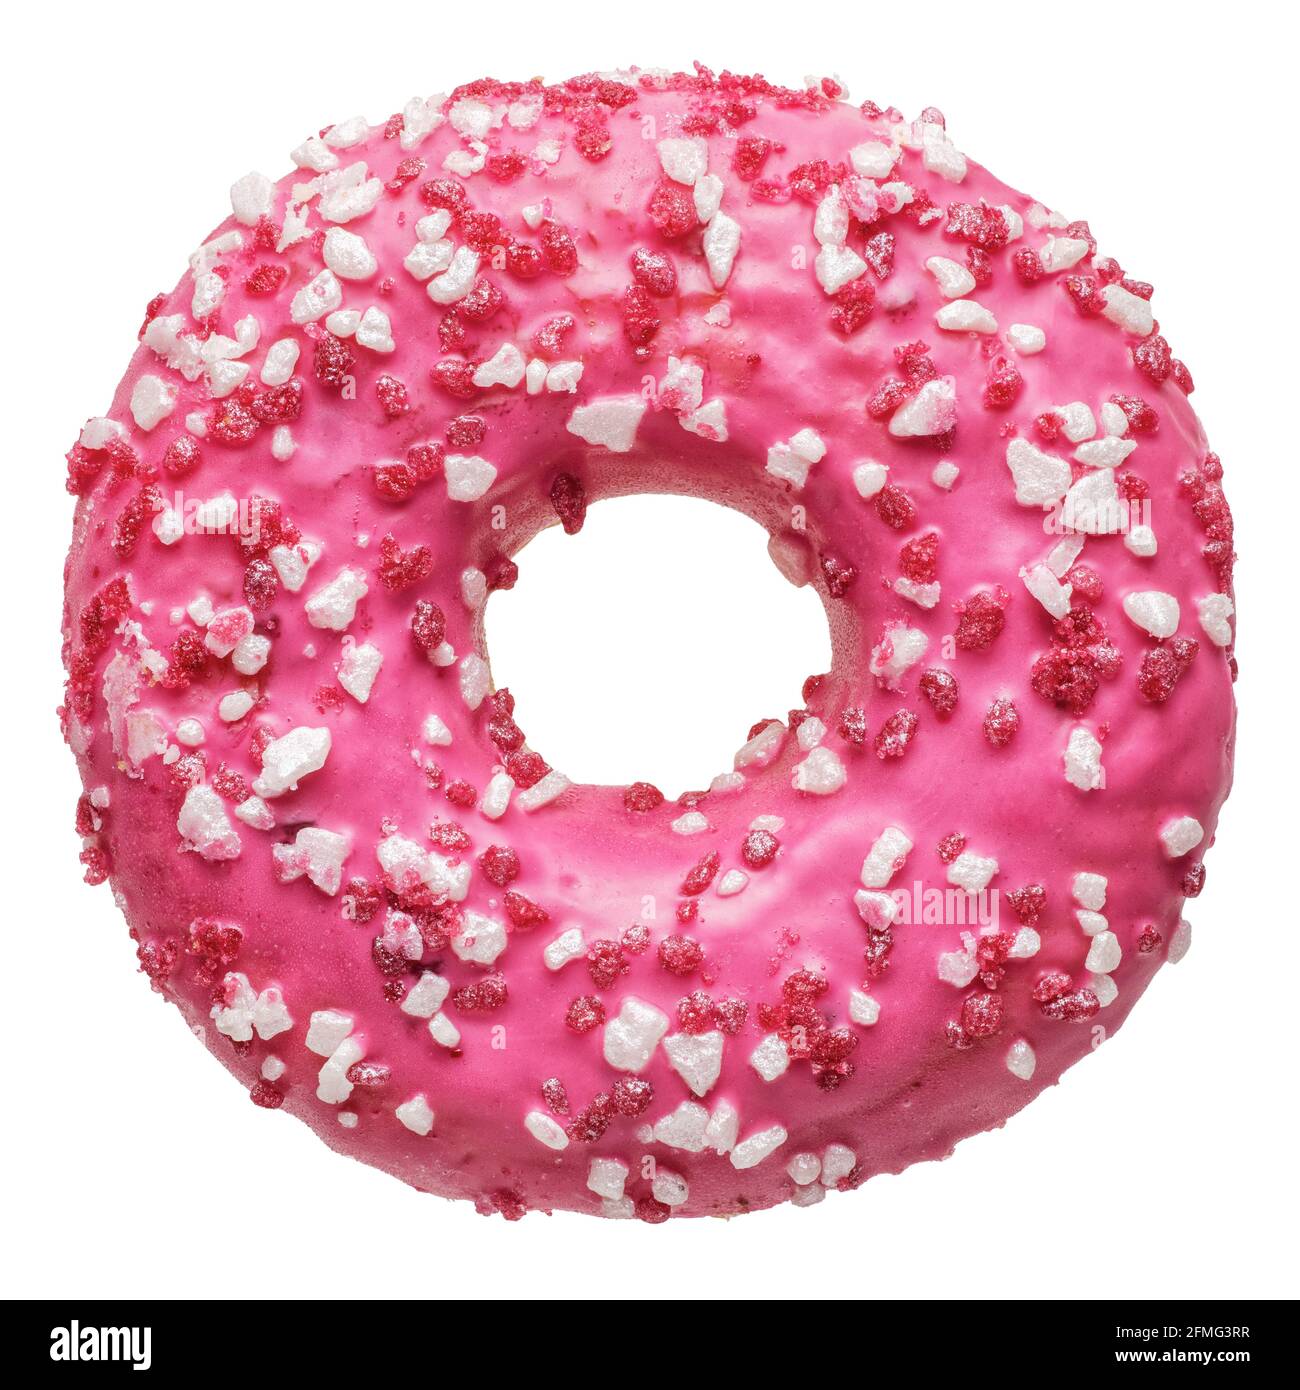 Objets isolés : un seul donut de fraise rose frais, sur fond blanc Banque D'Images